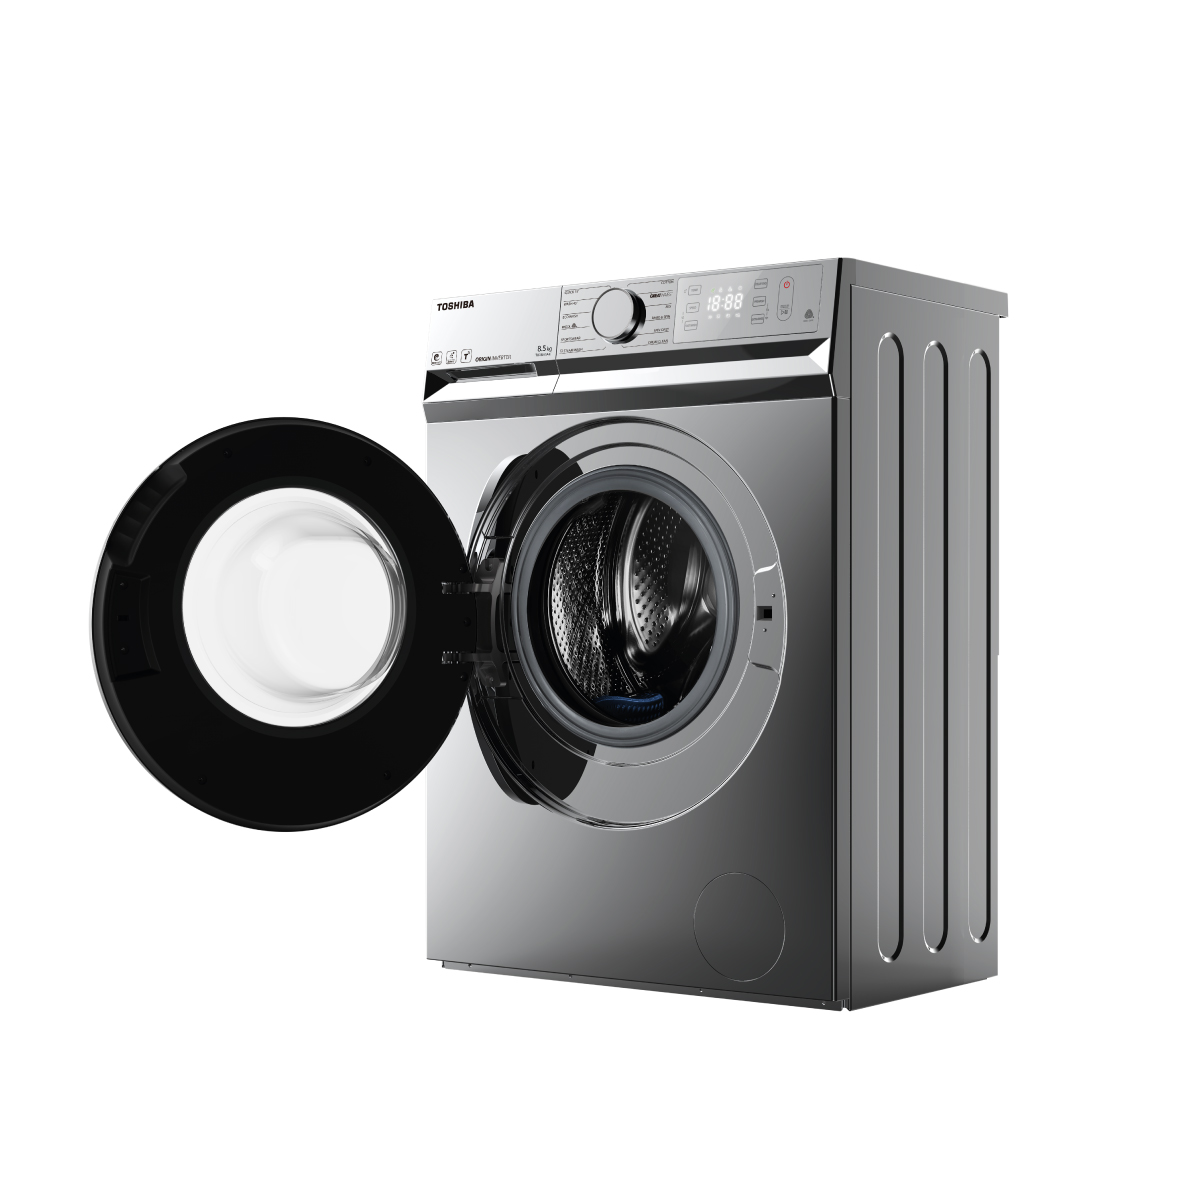 Bạn đang tìm kiếm một máy giặt chất lượng, hiệu suất tuyệt vời và tiết kiệm điện? Hãy cùng khám phá những tính năng tuyệt vời của máy giặt Toshiba. Ảnh liên quan sẽ khiến bạn tin tưởng vào sự chất lượng của sản phẩm này.